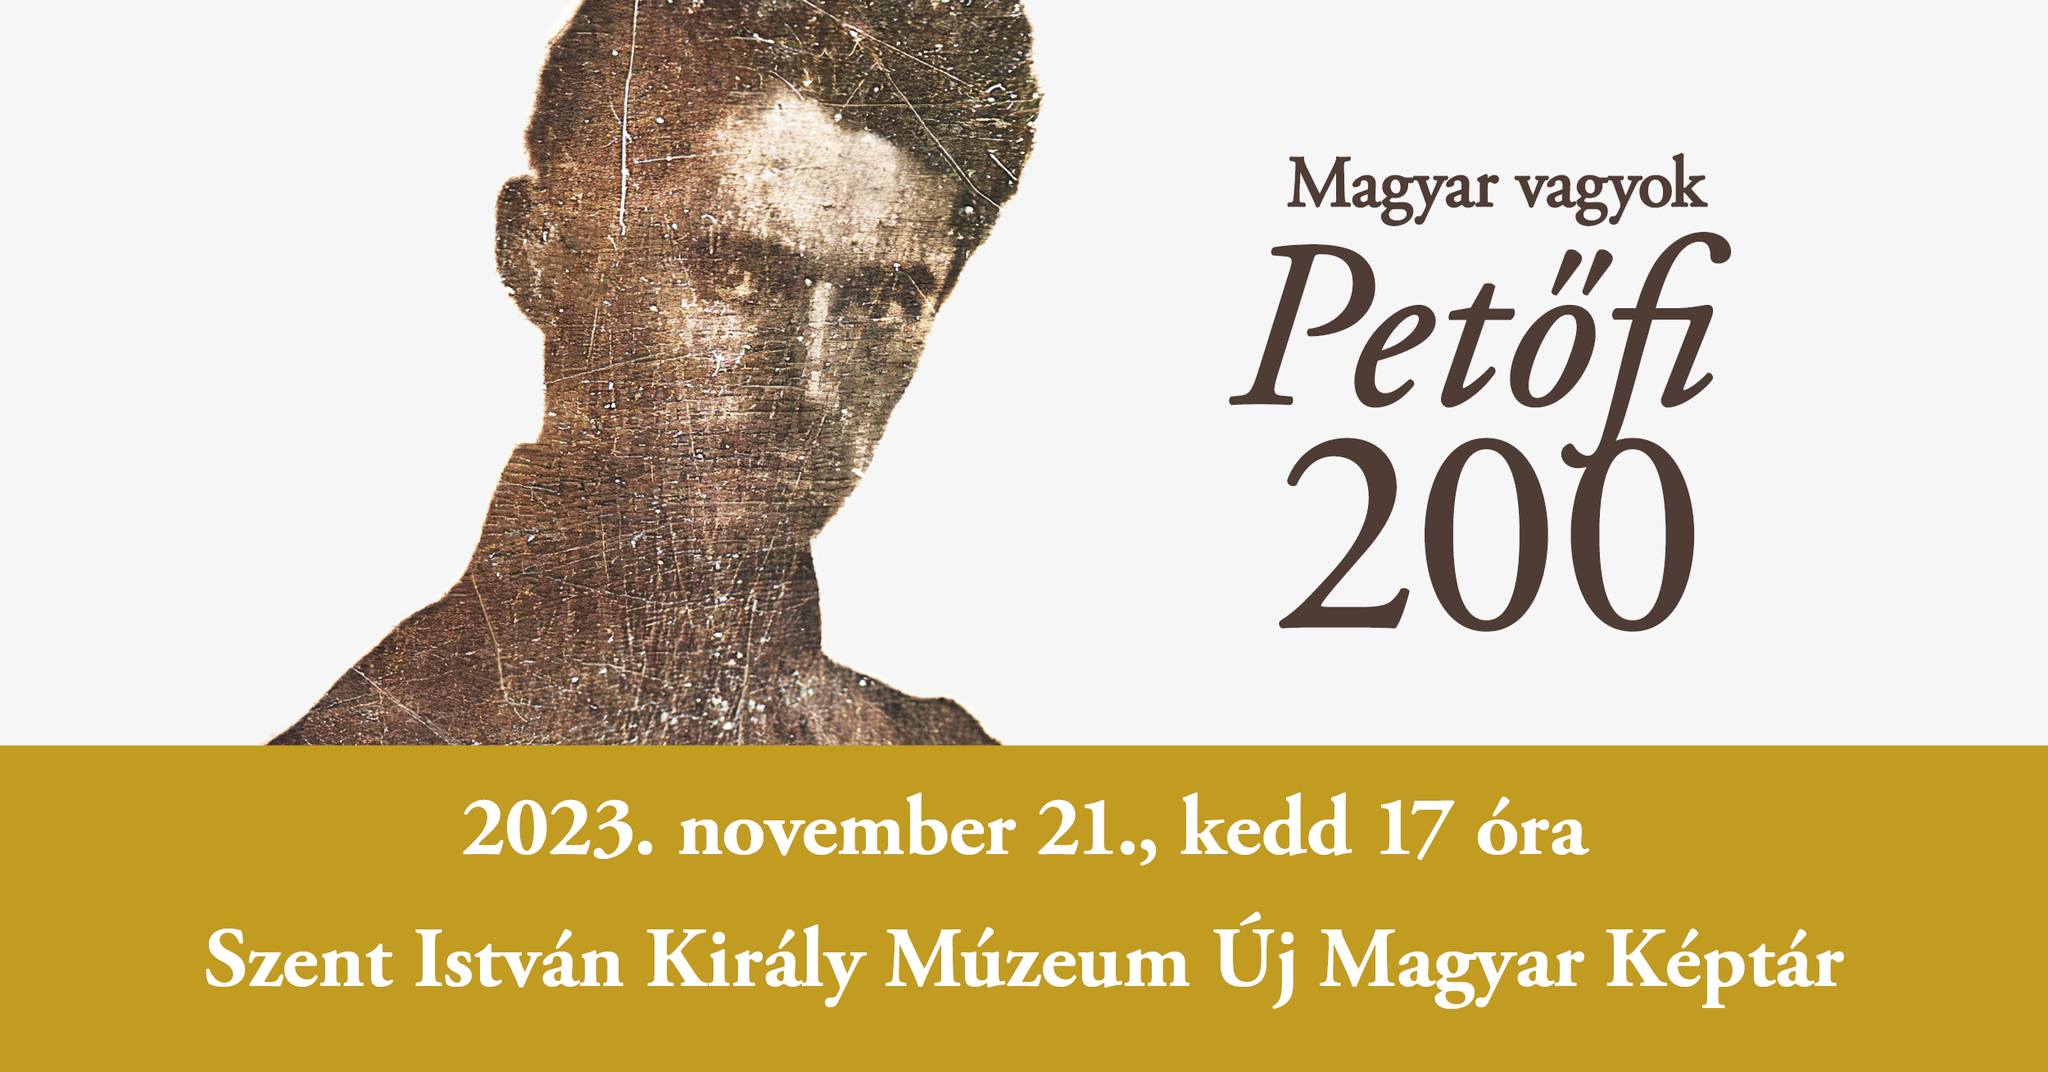 Magyar vagyok – Petőfi Sándorról nyílik kiállítás az Új Magyar Képtárban